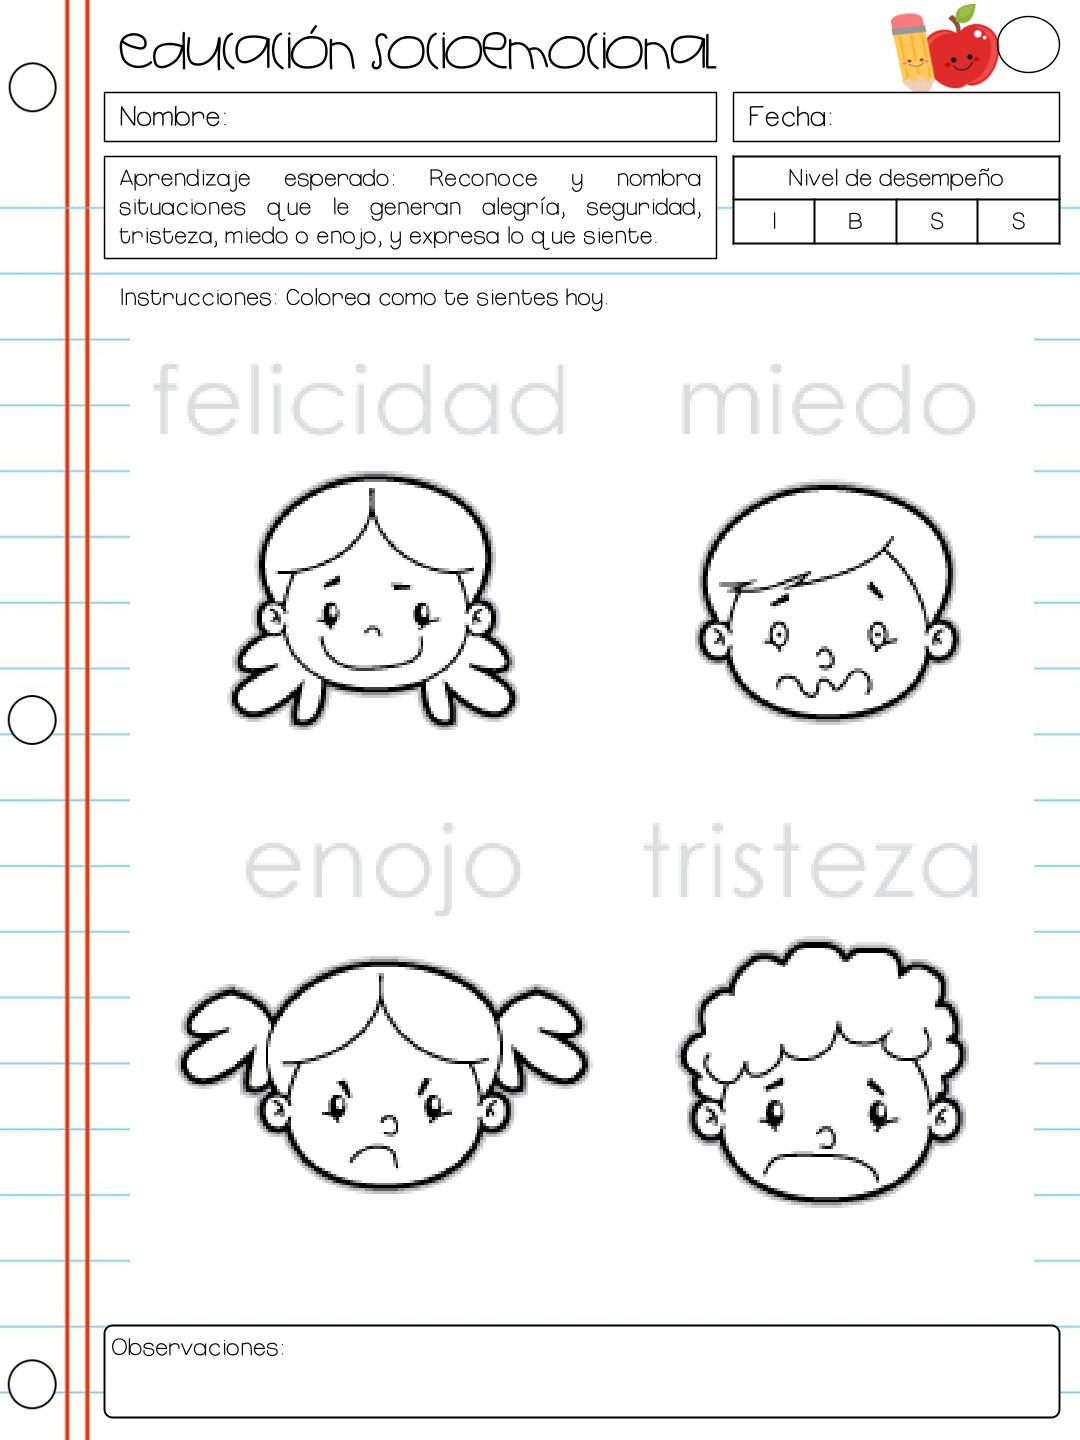 Cuaderno Educación Socioemocional | Materiales Educativos para Maestras